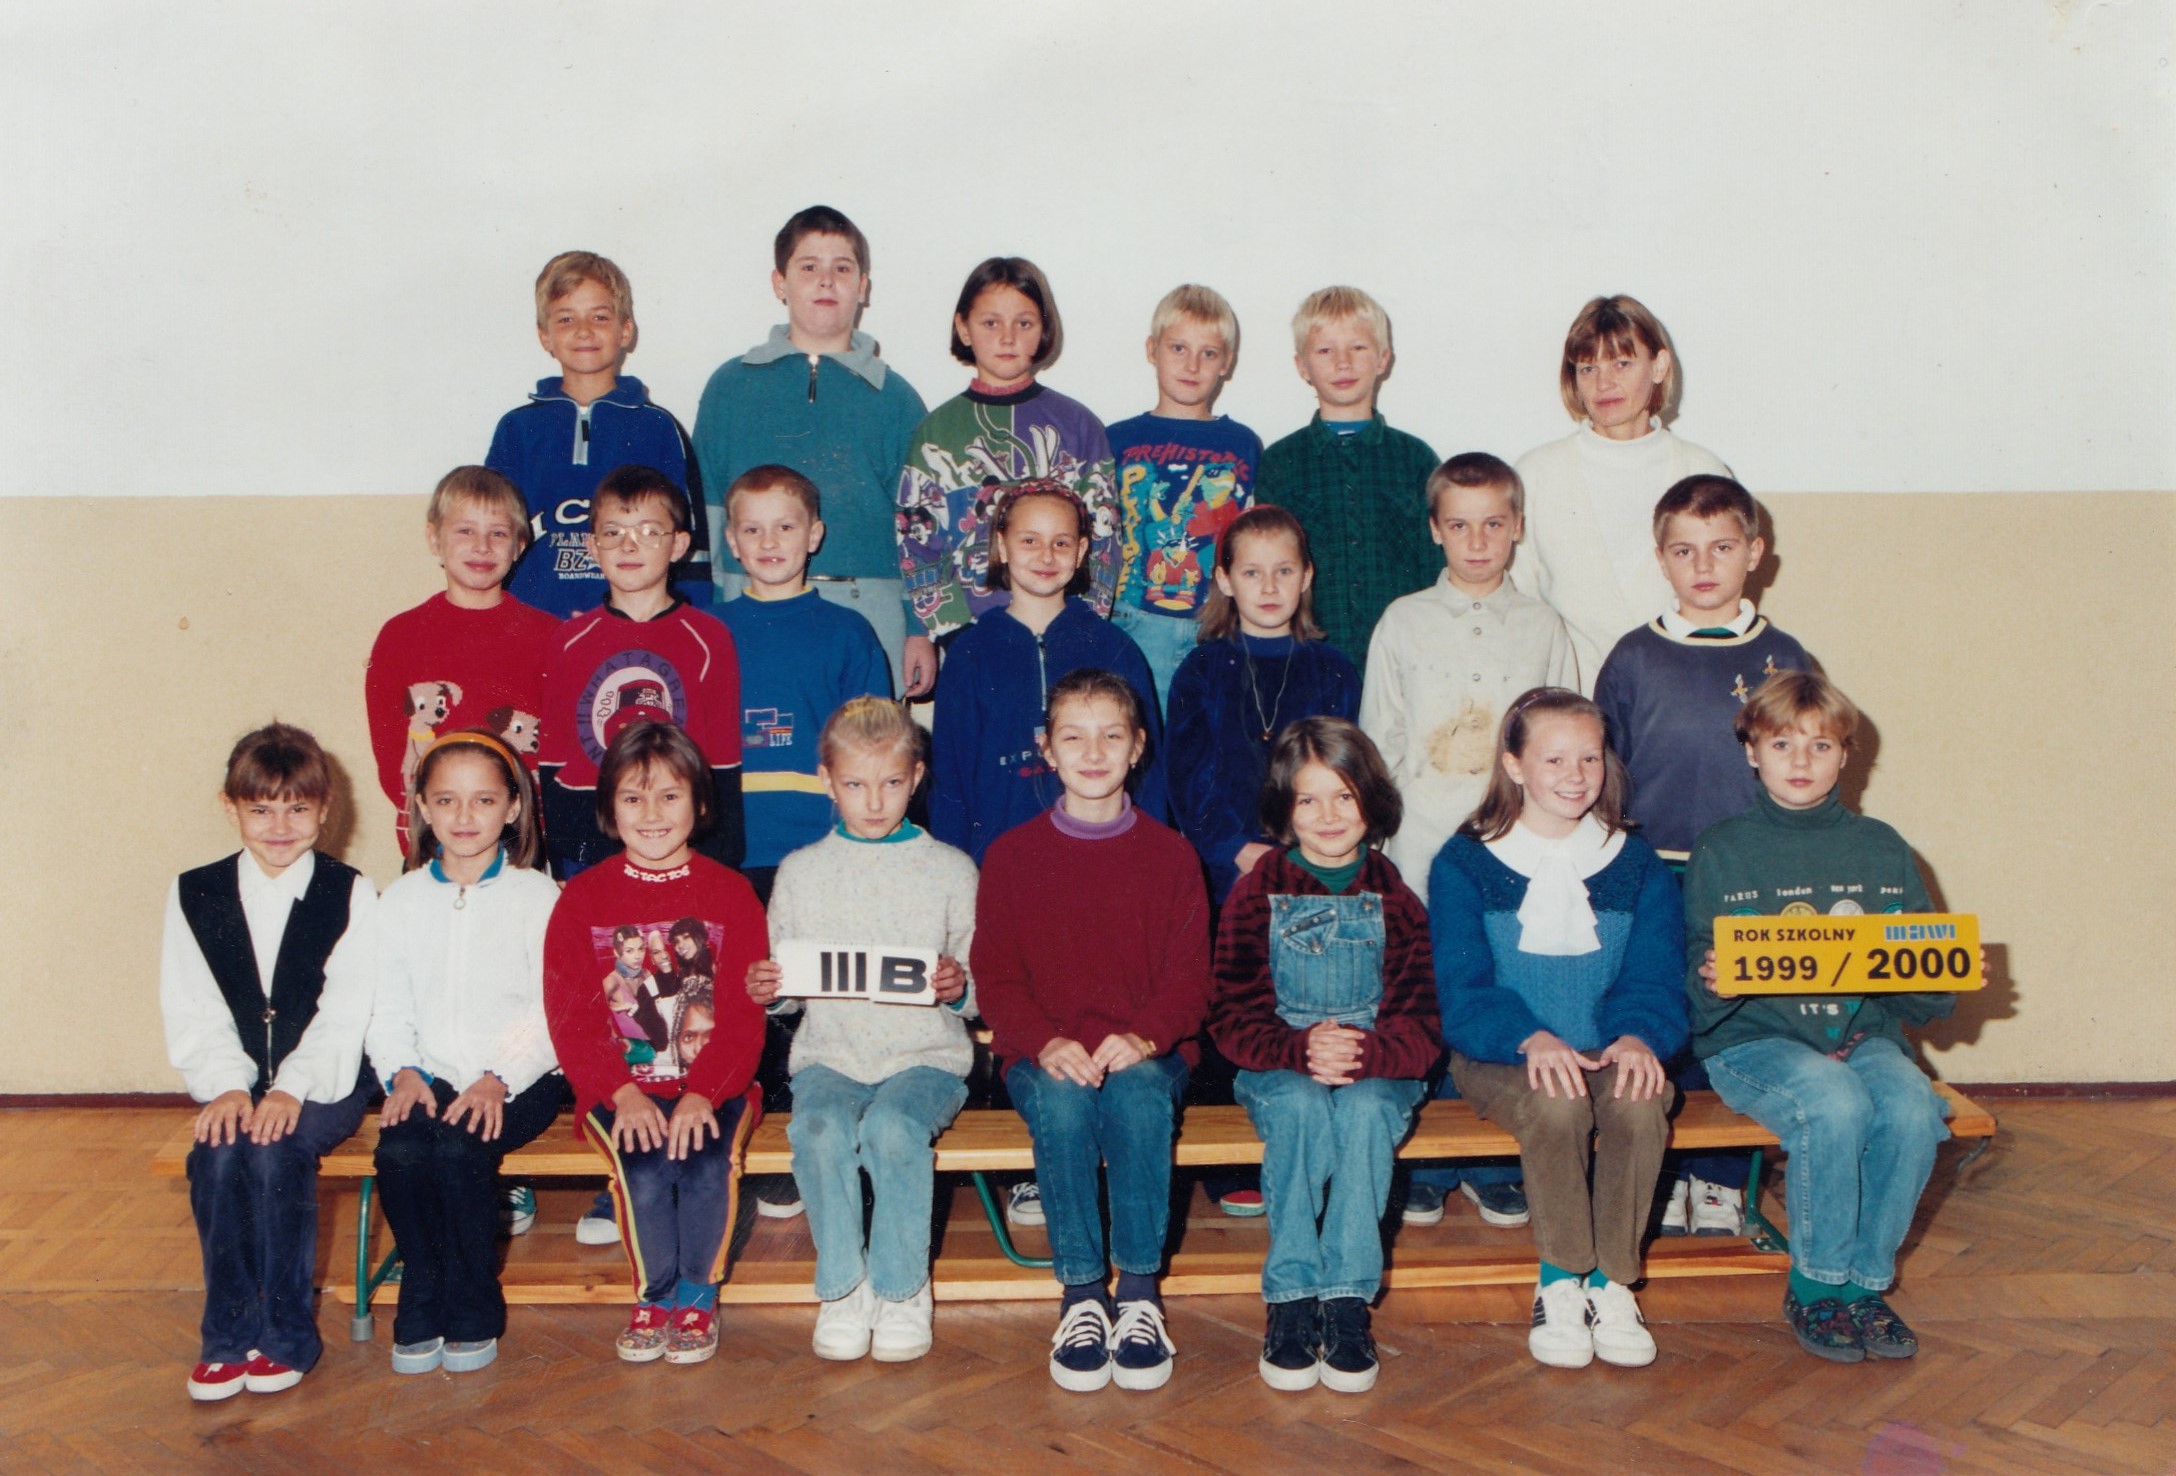 Klasa B III niczym Umarła klasa, stoję w środkowym rzędzie, trzecia od prawej, 1999